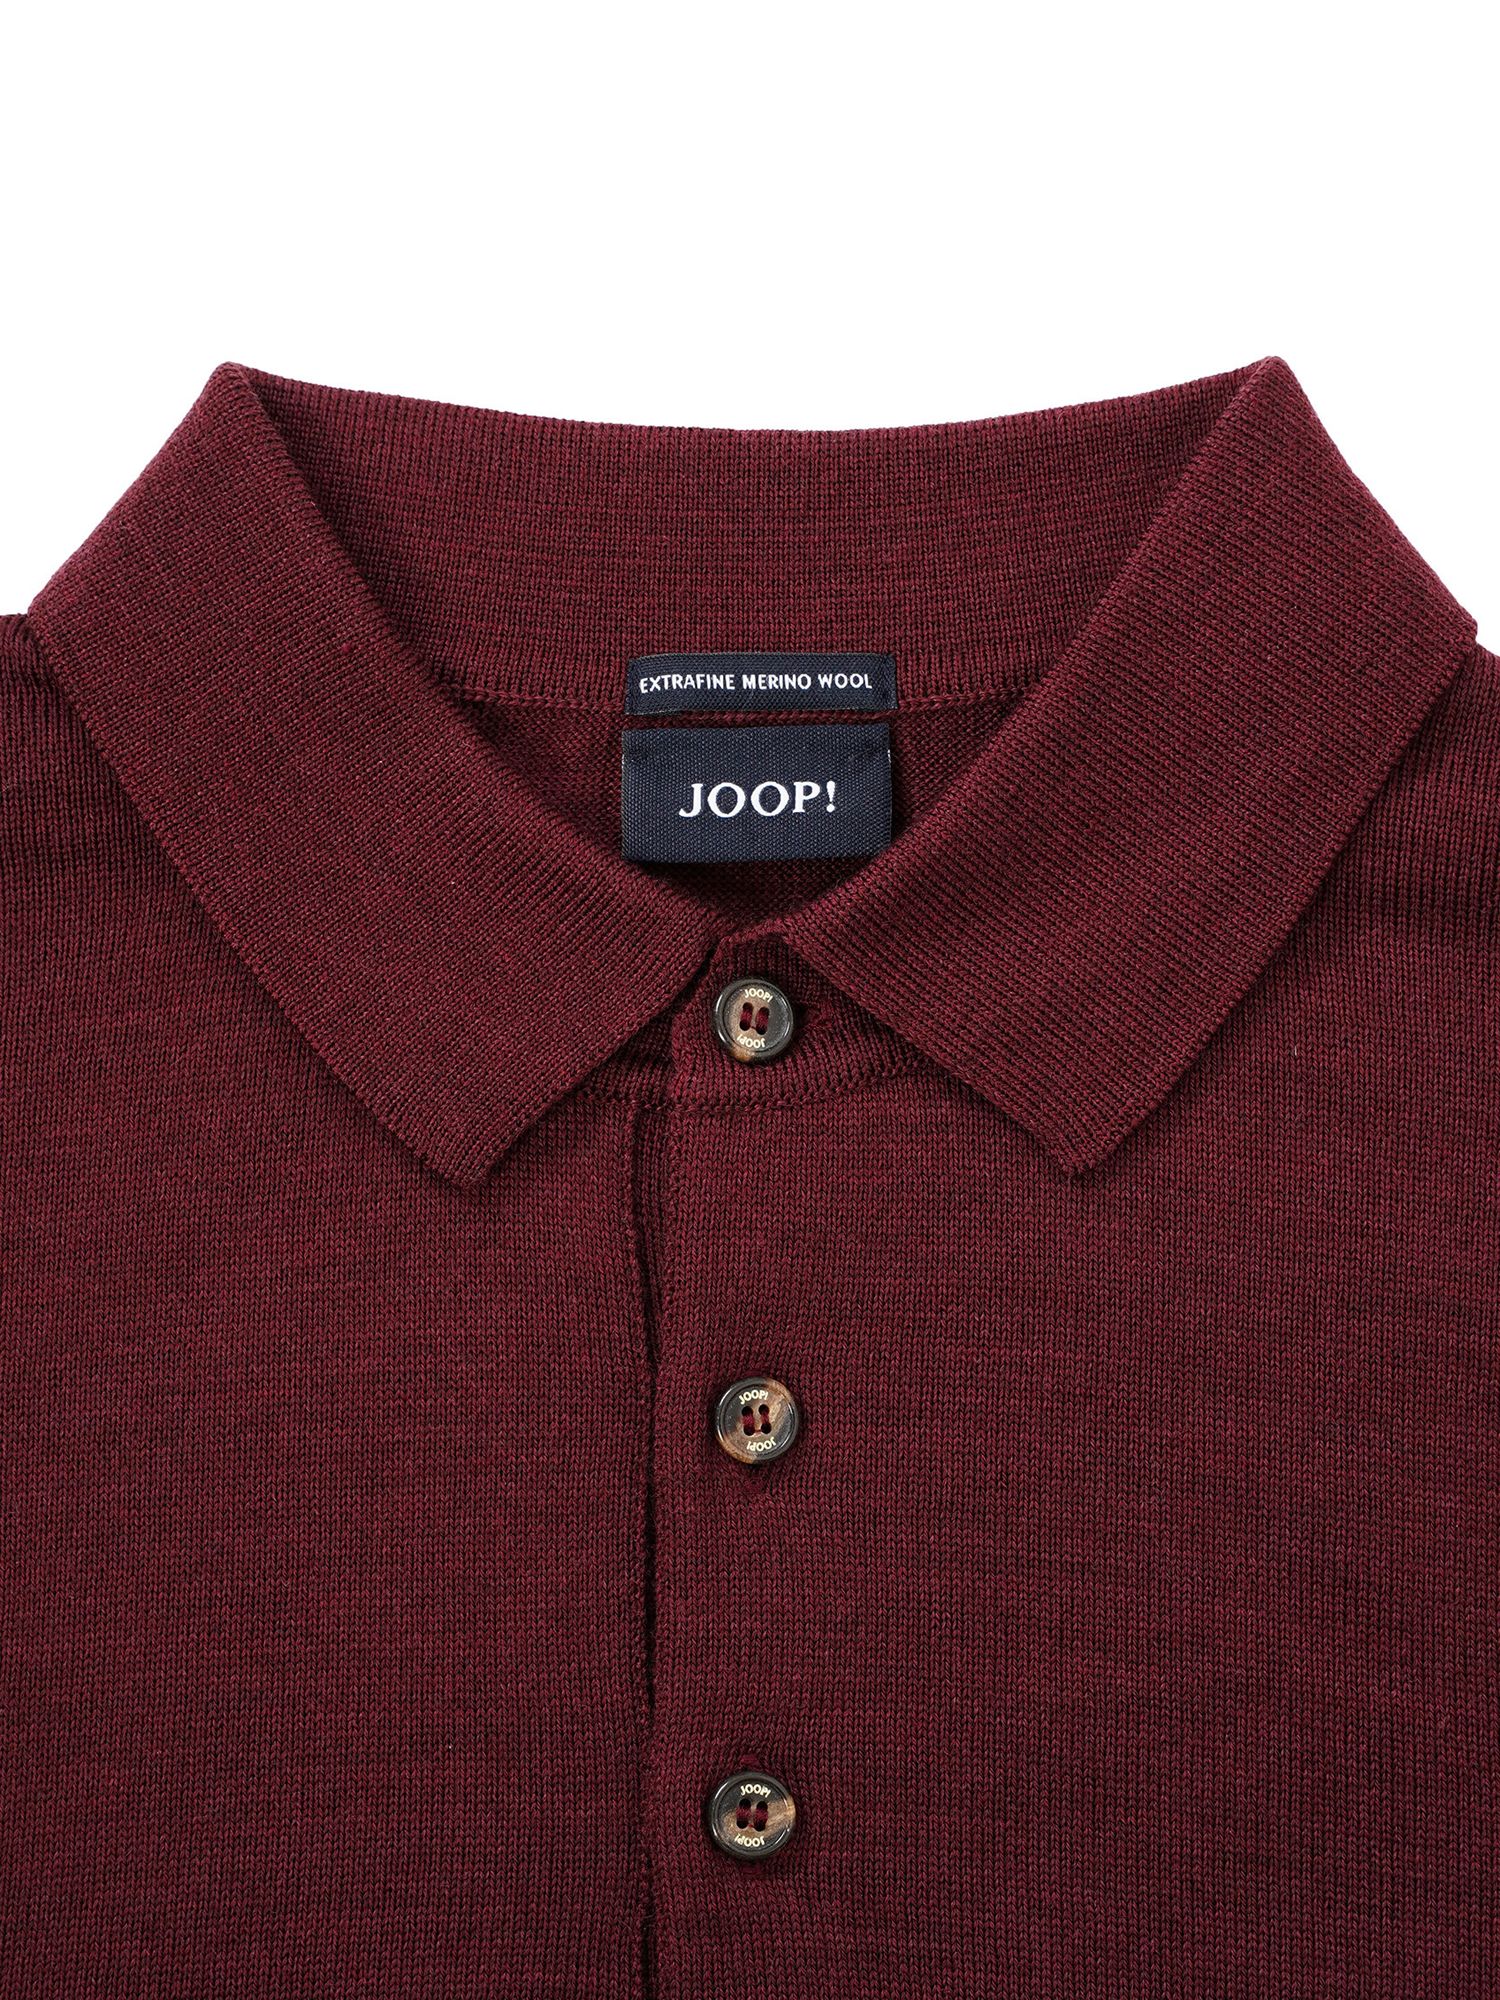 Buy JOOP! Dondo Wool Knitted Jumper Online at johnlewis.com